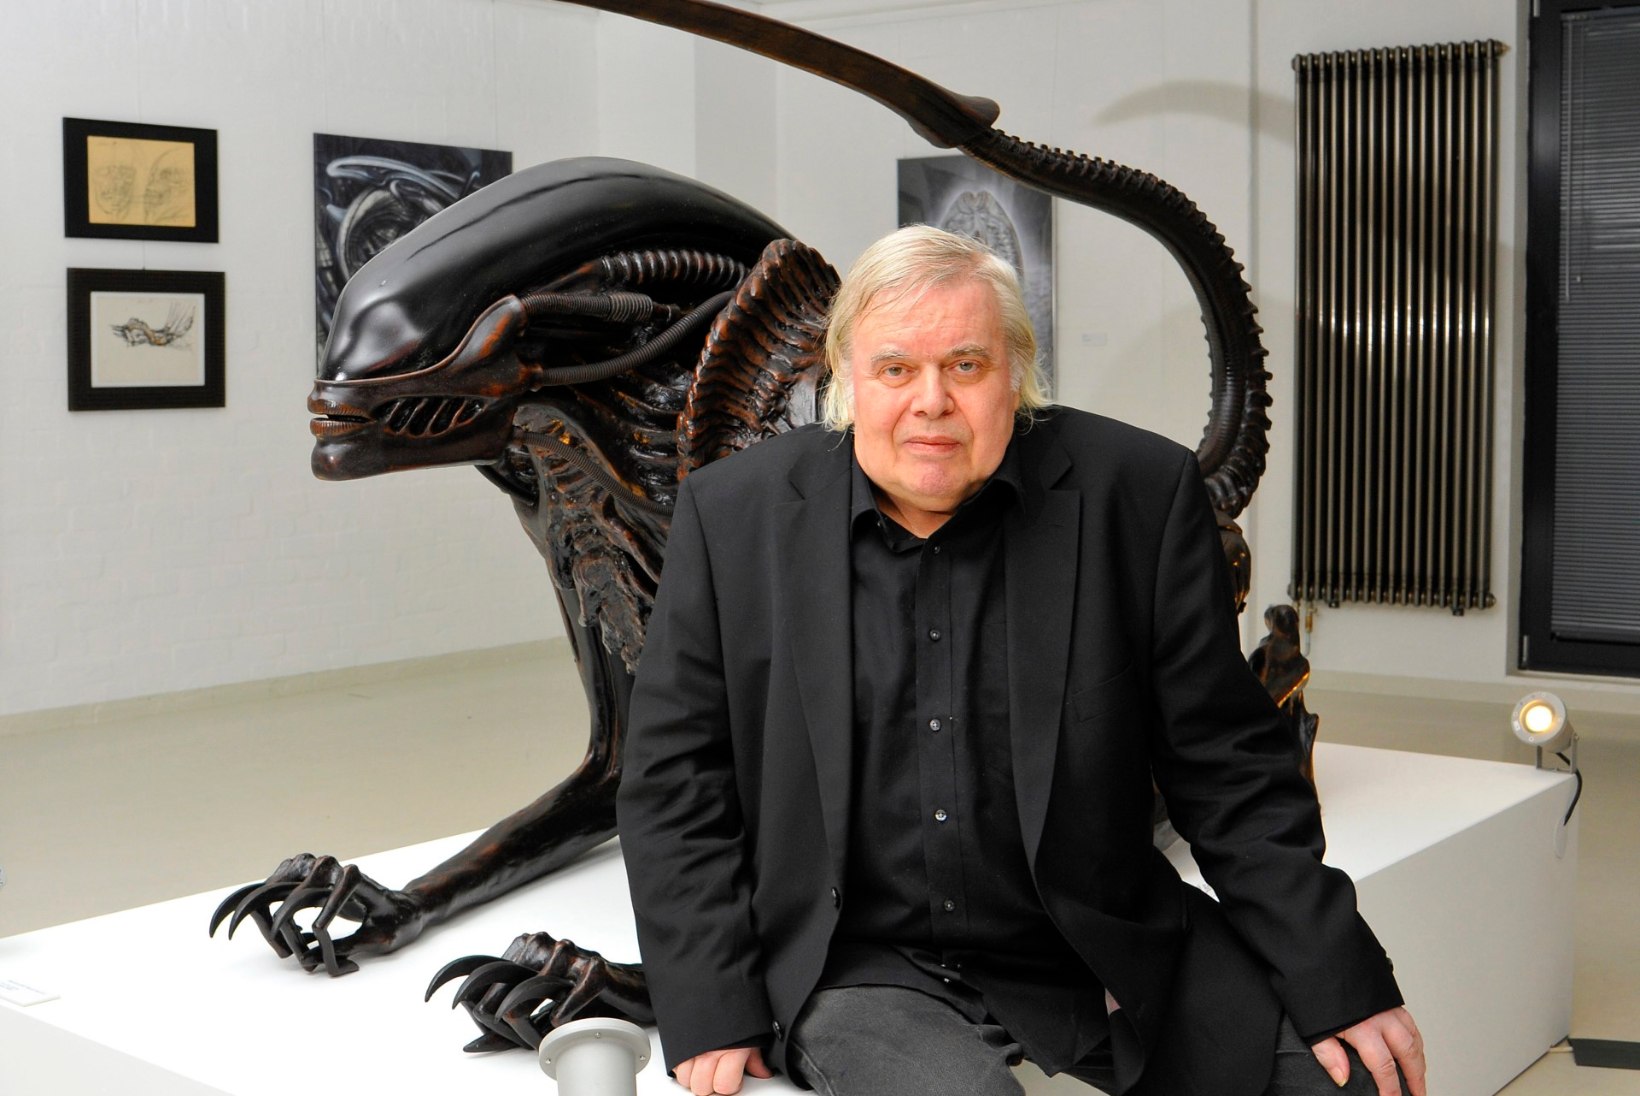 Suri filmi "Alien" kunstnik H. R. Giger